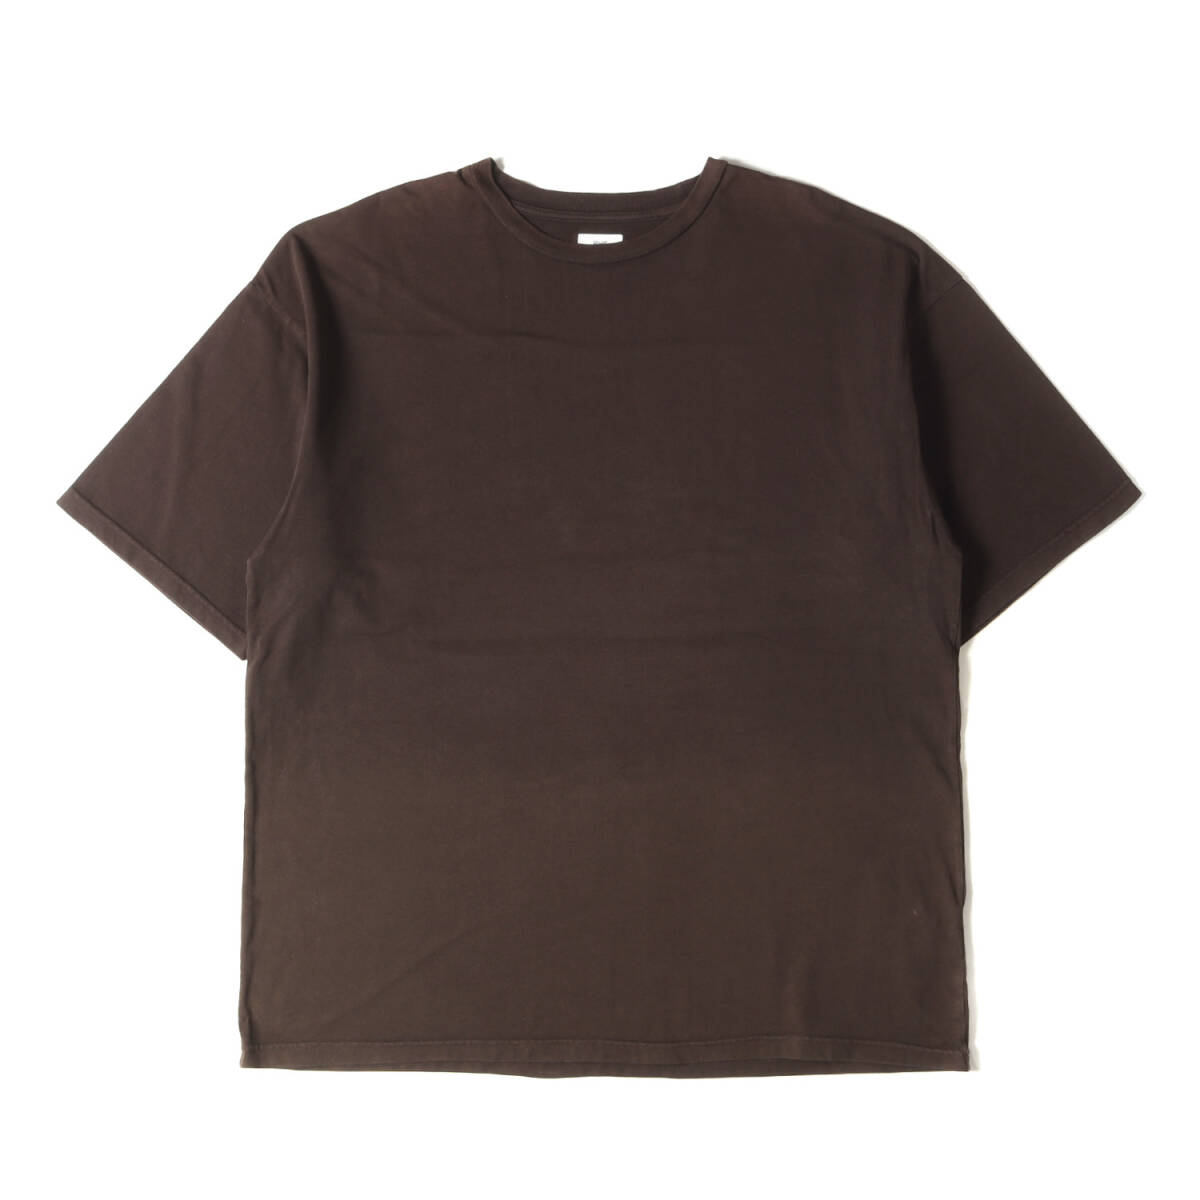 Ron Herman ロンハーマン Tシャツ サイズ:M 21AW グラデーション ヘビーウェイト クルーネック 半袖Tシャツ ブラウン トップス カットソー_画像1